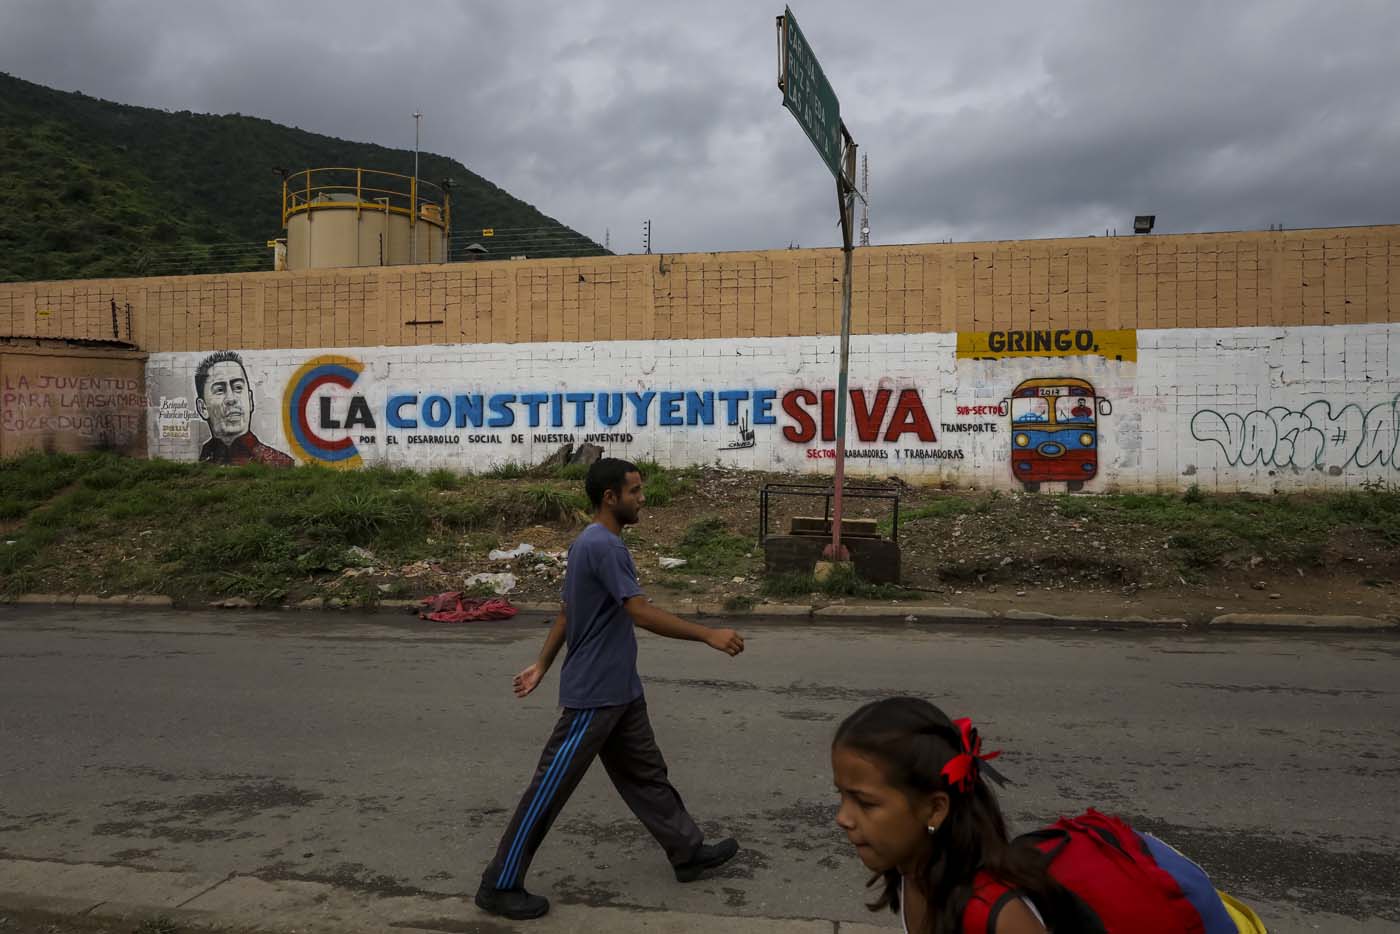 ACOMPAÑA CRÓNICA: VENEZUELA CRISIS - CAR002. CARACAS (VENEZUELA), 15/07/2017.- Un hombre y una niña caminan en frente de una pared decorada con propaganda de la Asamblea Nacional Constituyente en una barriada hoy, sábado 15 de julio de 2017, en Caracas (Venezuela). Con el éxito asegurado en las zonas privilegiadas de Caracas, donde el chavismo nunca tuvo predicamento, la consulta opositora sobre la Asamblea Constituyente que impulsa el presidente Nicolás Maduro se la juega ahora en los barrios populares que vieron en Hugo Chávez el mesías de la Revolución Bolivariana. EFE/Miguel Gutiérrez